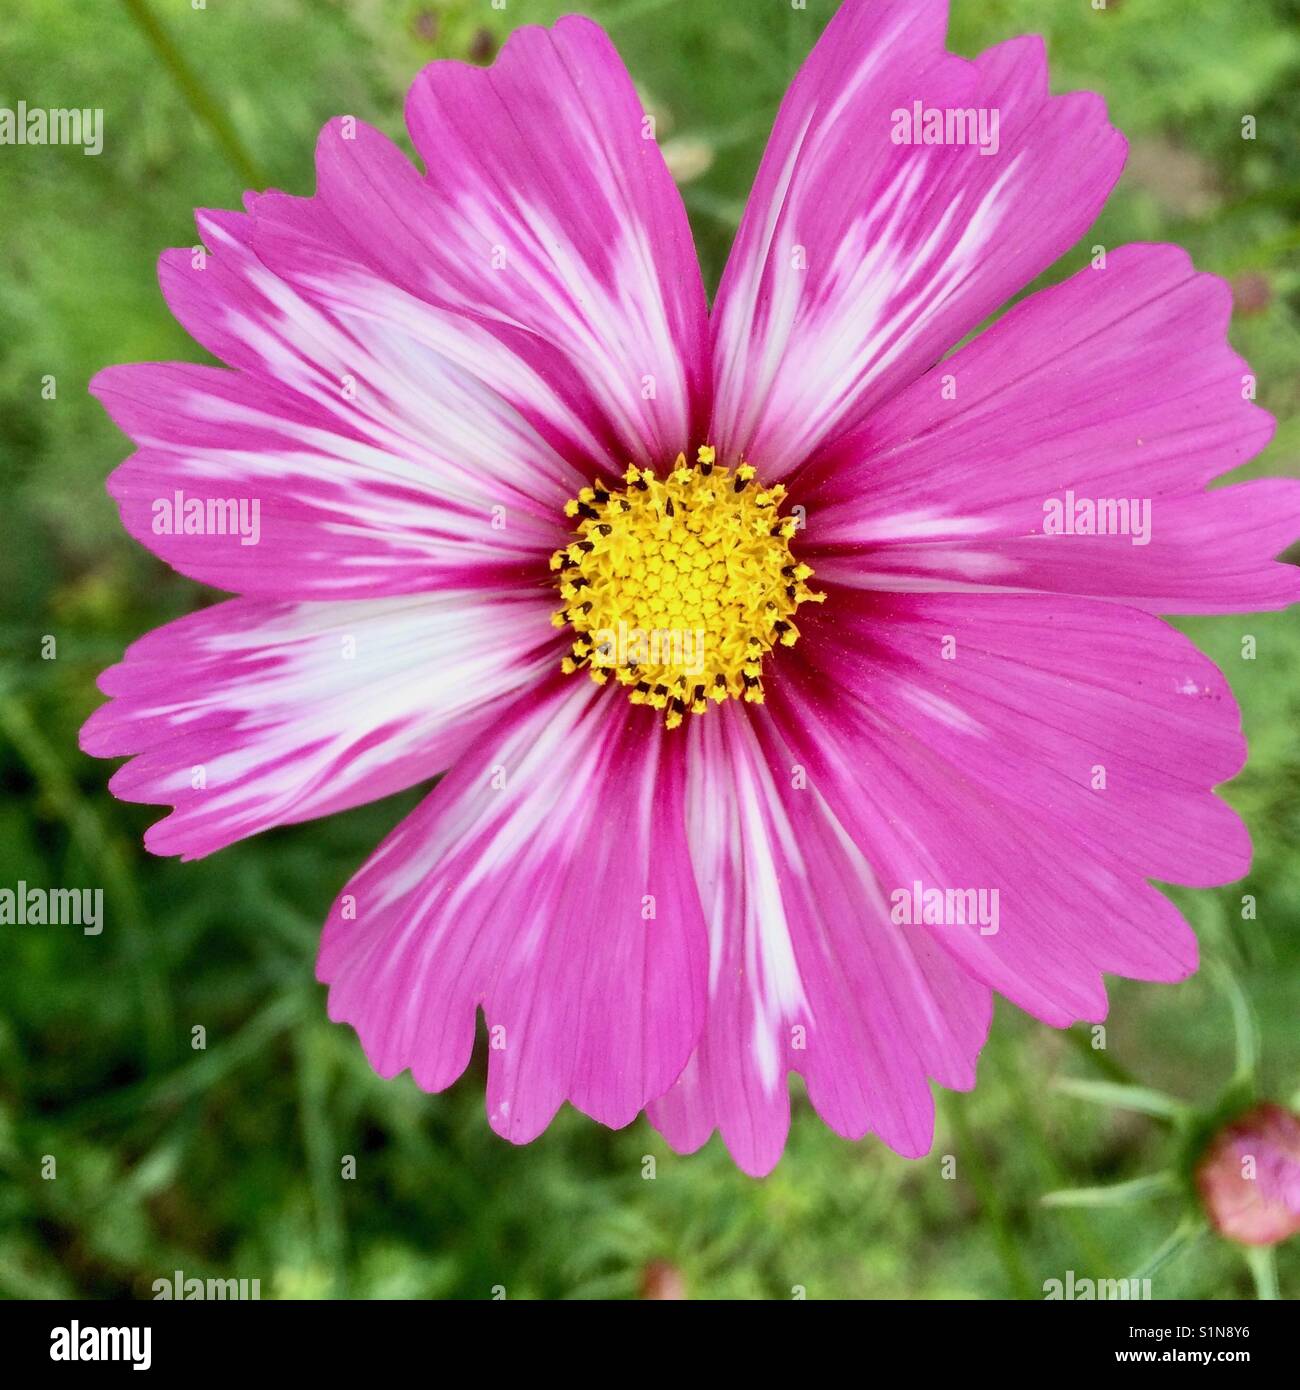 Cosmos rose fleur avec bandes blanches Banque D'Images